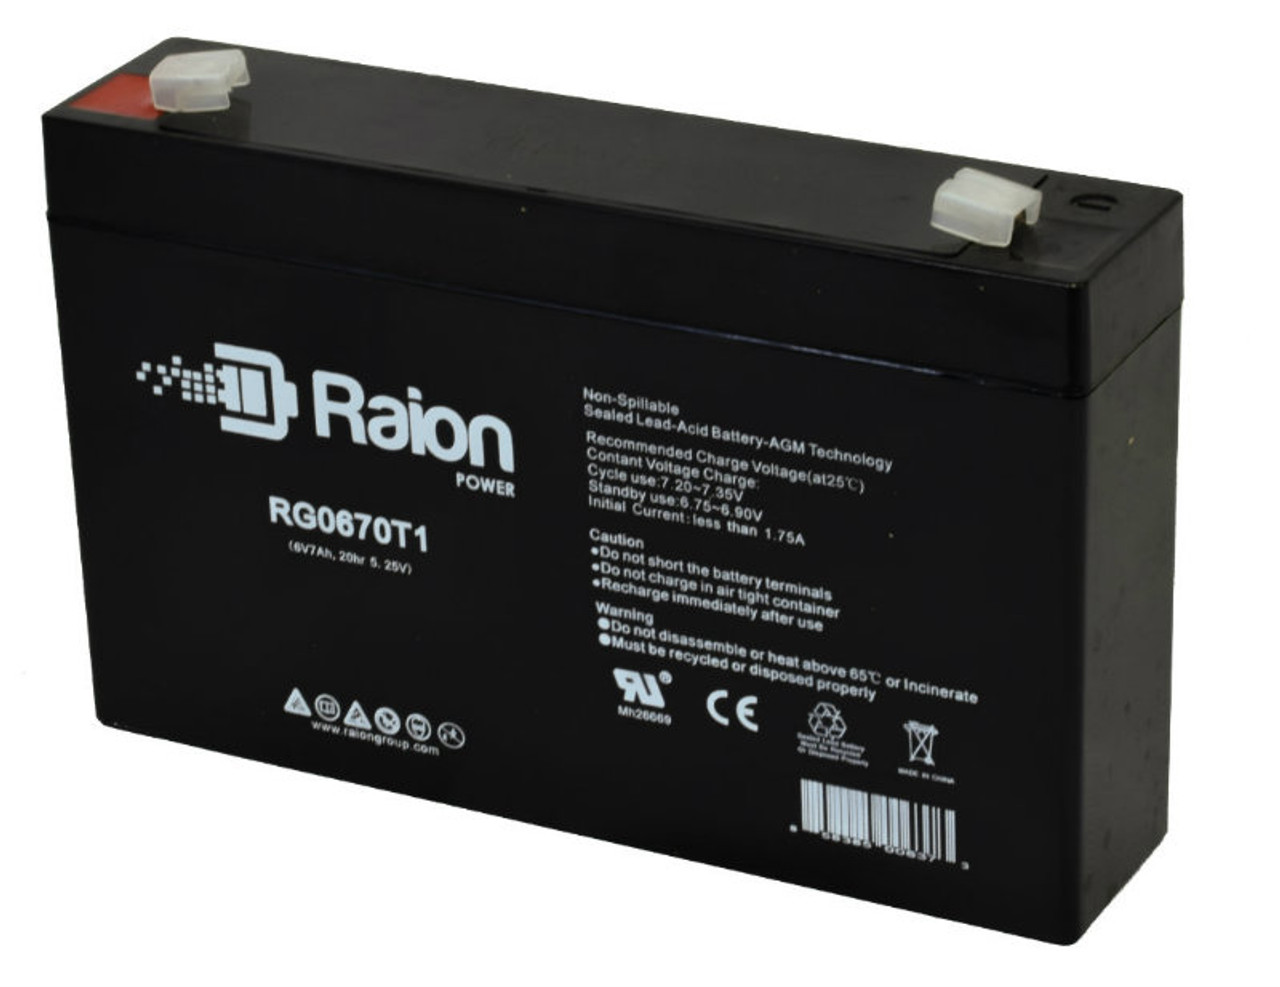 Raion Power RG0670T1 Replacement Battery for Peak Energy PK6V7.2F1 OEM Battery